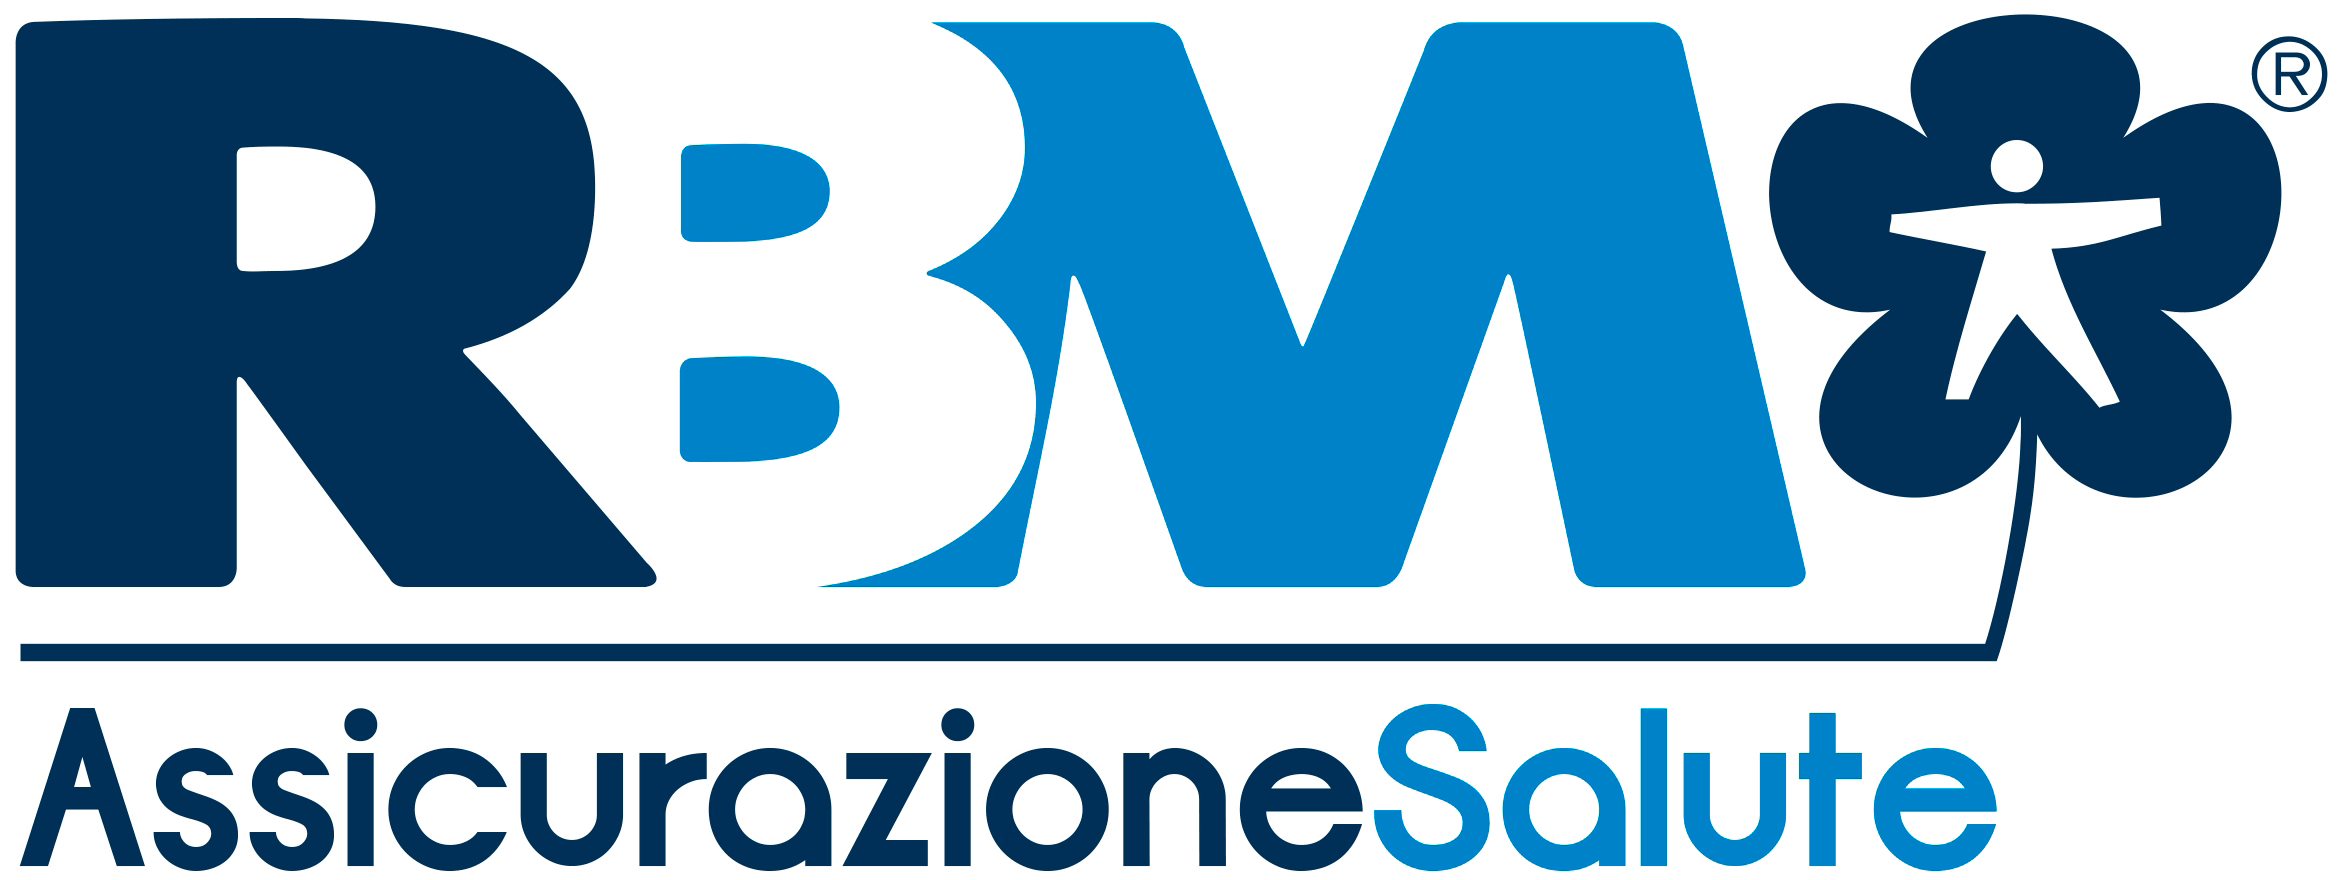 Logo-RBM-Assicurazione-Salute